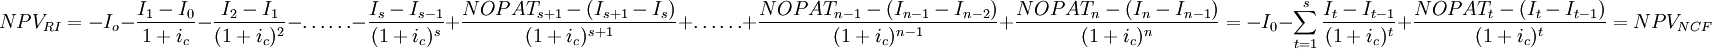 NPV_{RI}=-I_o-\frac{I_1-I_0}{1+i_c}-\frac{I_2-I_1}{(1+i_c)^2}-\ldots\ldots-\frac{I_s-I_{s-1}}{(1+i_c)^s}+\frac{NOPAT_{s+1}-(I_{s+1}-I_s)}{(1+i_c)^{s+1}}+\ldots\ldots+\frac{NOPAT_{n-1}-(I_{n-1}-I_{n-2})}{(1+i_c)^{n-1}}+\frac{NOPAT_n-(I_n-I_{n-1})}{(1+i_c)^n}=-I_0-\sum_{t=1}^s\frac{I_t-I_{t-1}}{(1+i_c)^t}+\frac{NOPAT_t-(I_t-I_{t-1})}{(1+i_c)^t}=NPV_{NCF}